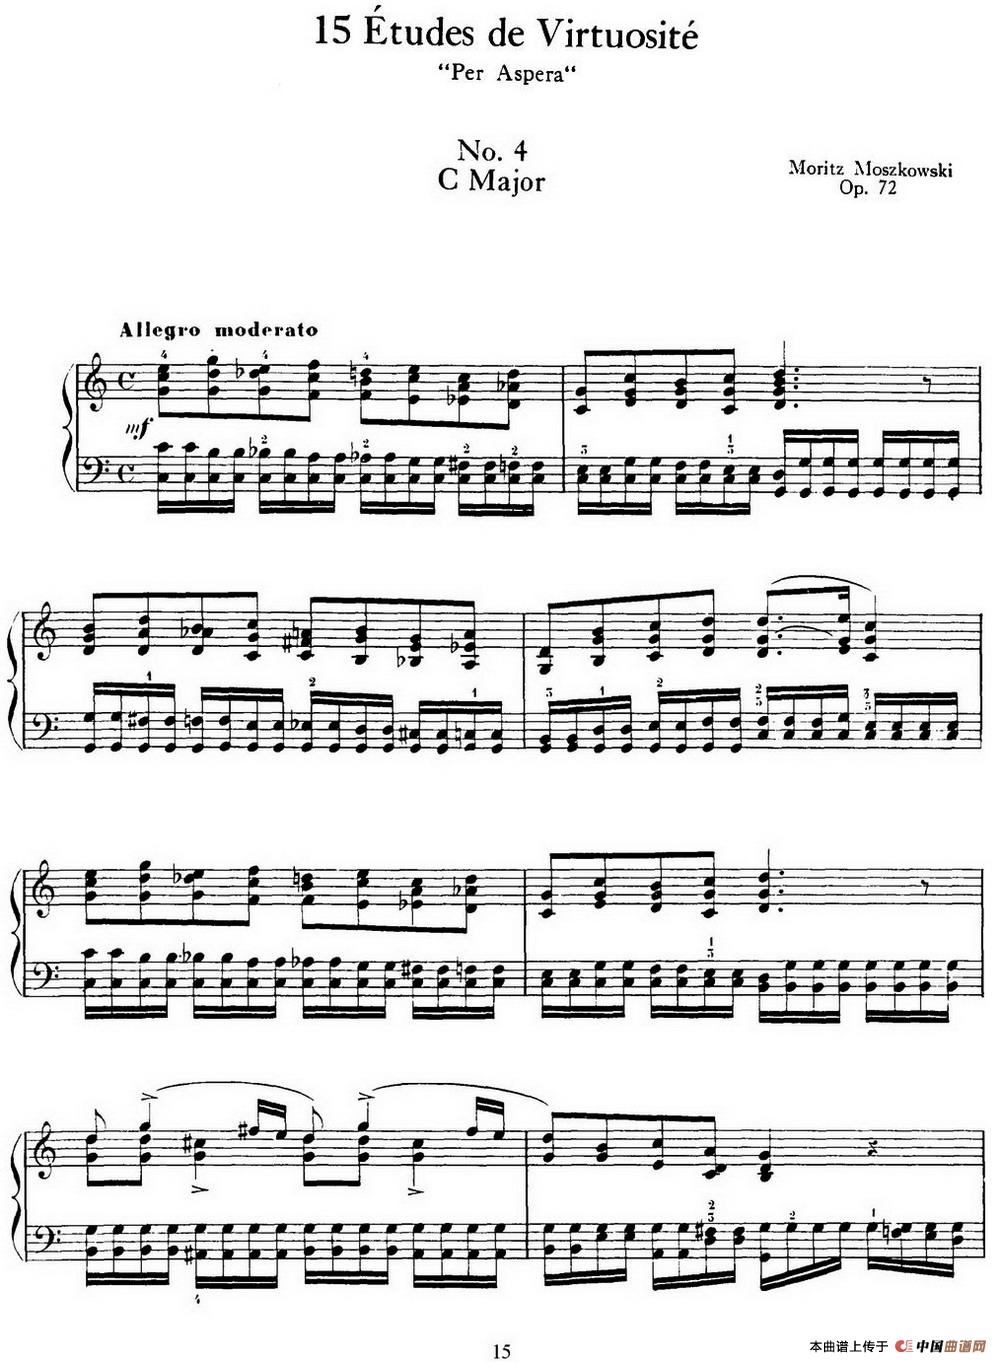 15 Etudes de Virtuosité Op.72 No.4 （十五首钢琴练习曲之四）(1)_015=.jpg